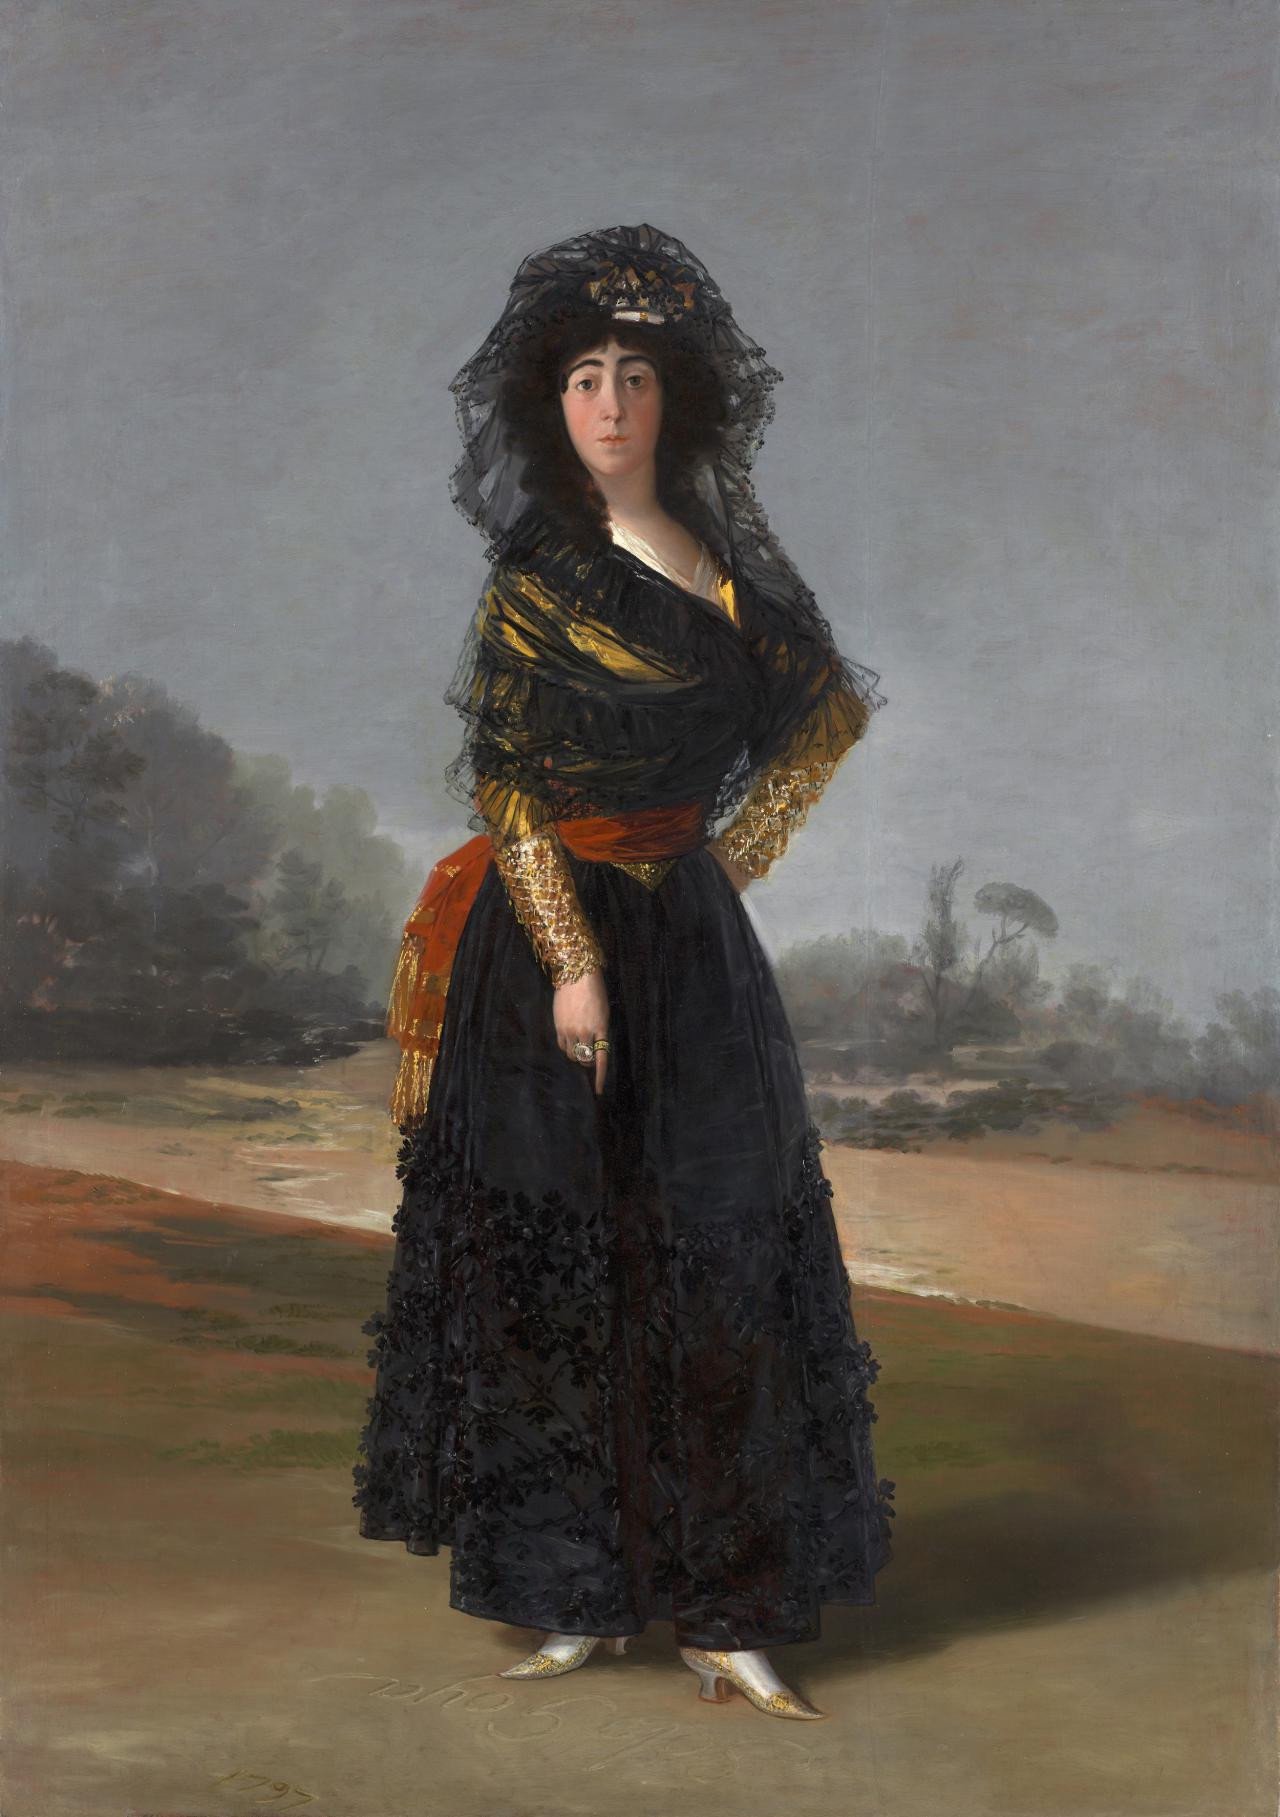 Die Herzogin von Alba by Francisco Goya - 1797 - 210 x 148 cm Hispanic Society Museum & Library